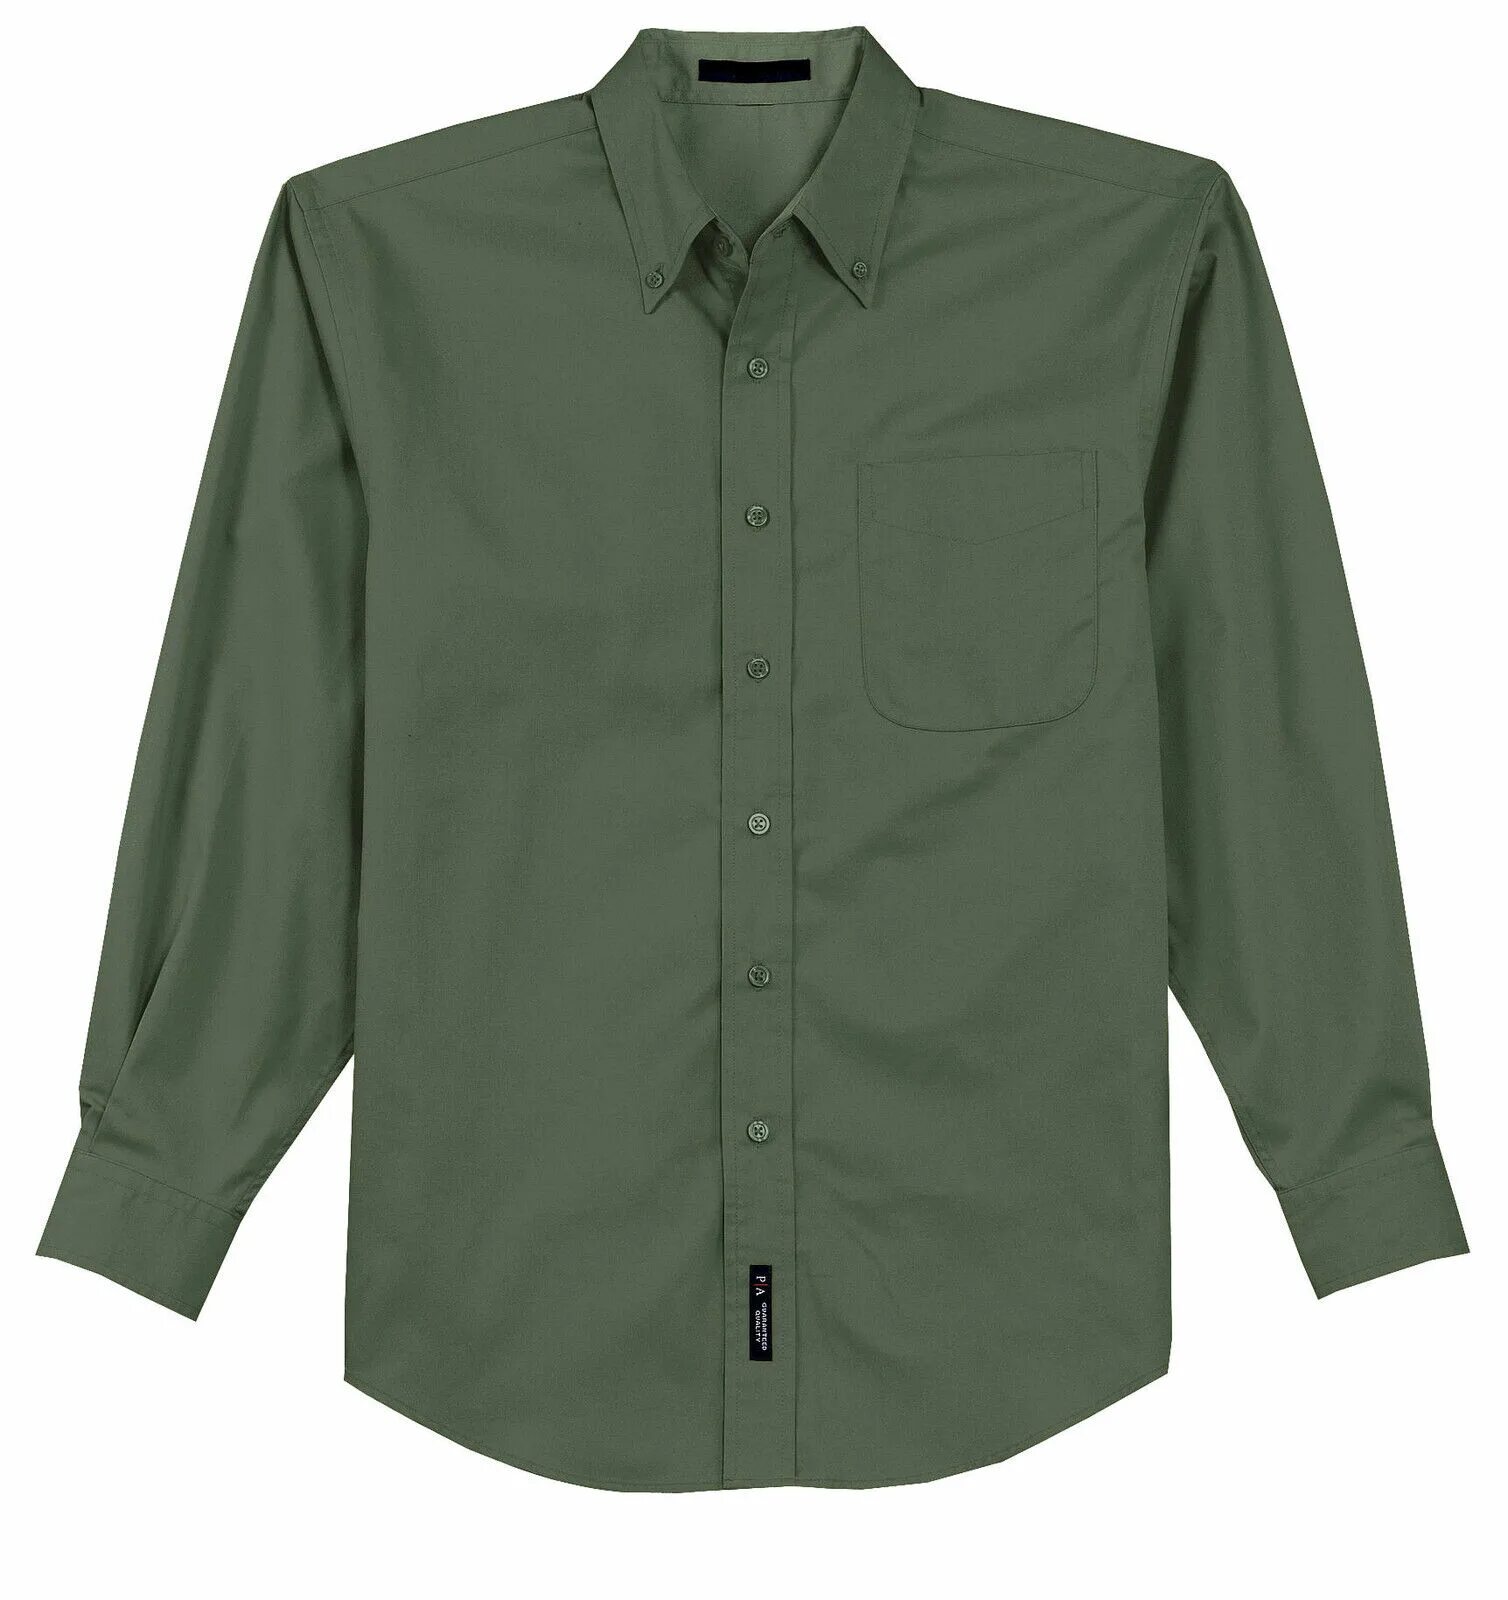 Рубашка Beware. Рукав рубашки. Зелёная рубашка с клевером. Рубашка Восточная на пуговицах зеленая.